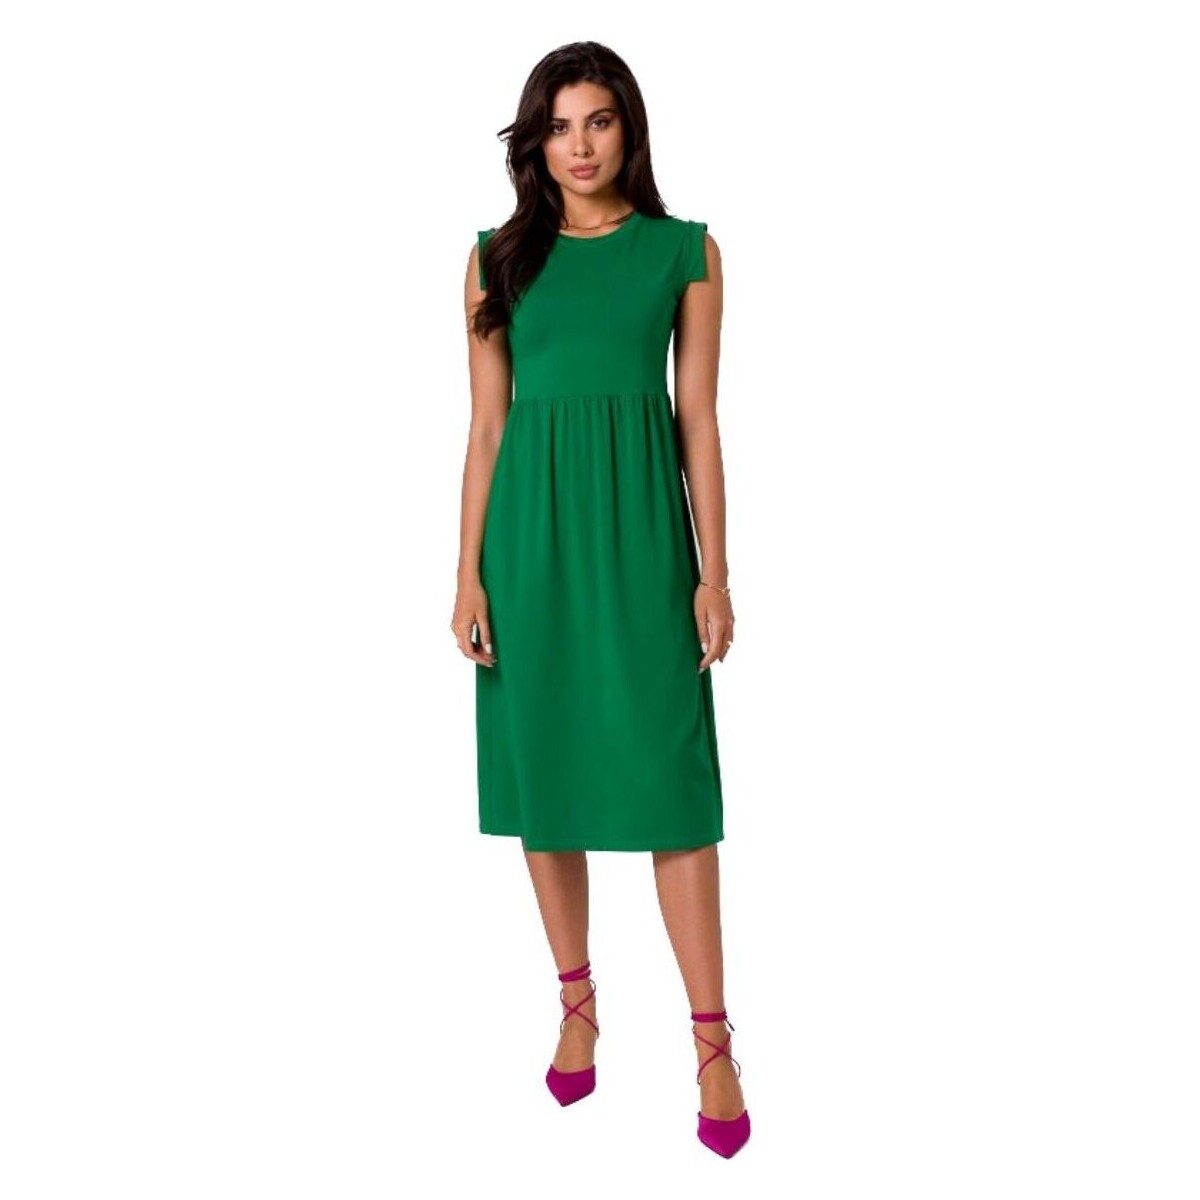 Textil Ženy Krátké šaty Bewear Dámské midi šaty Clariwse B262 zelená Zelená